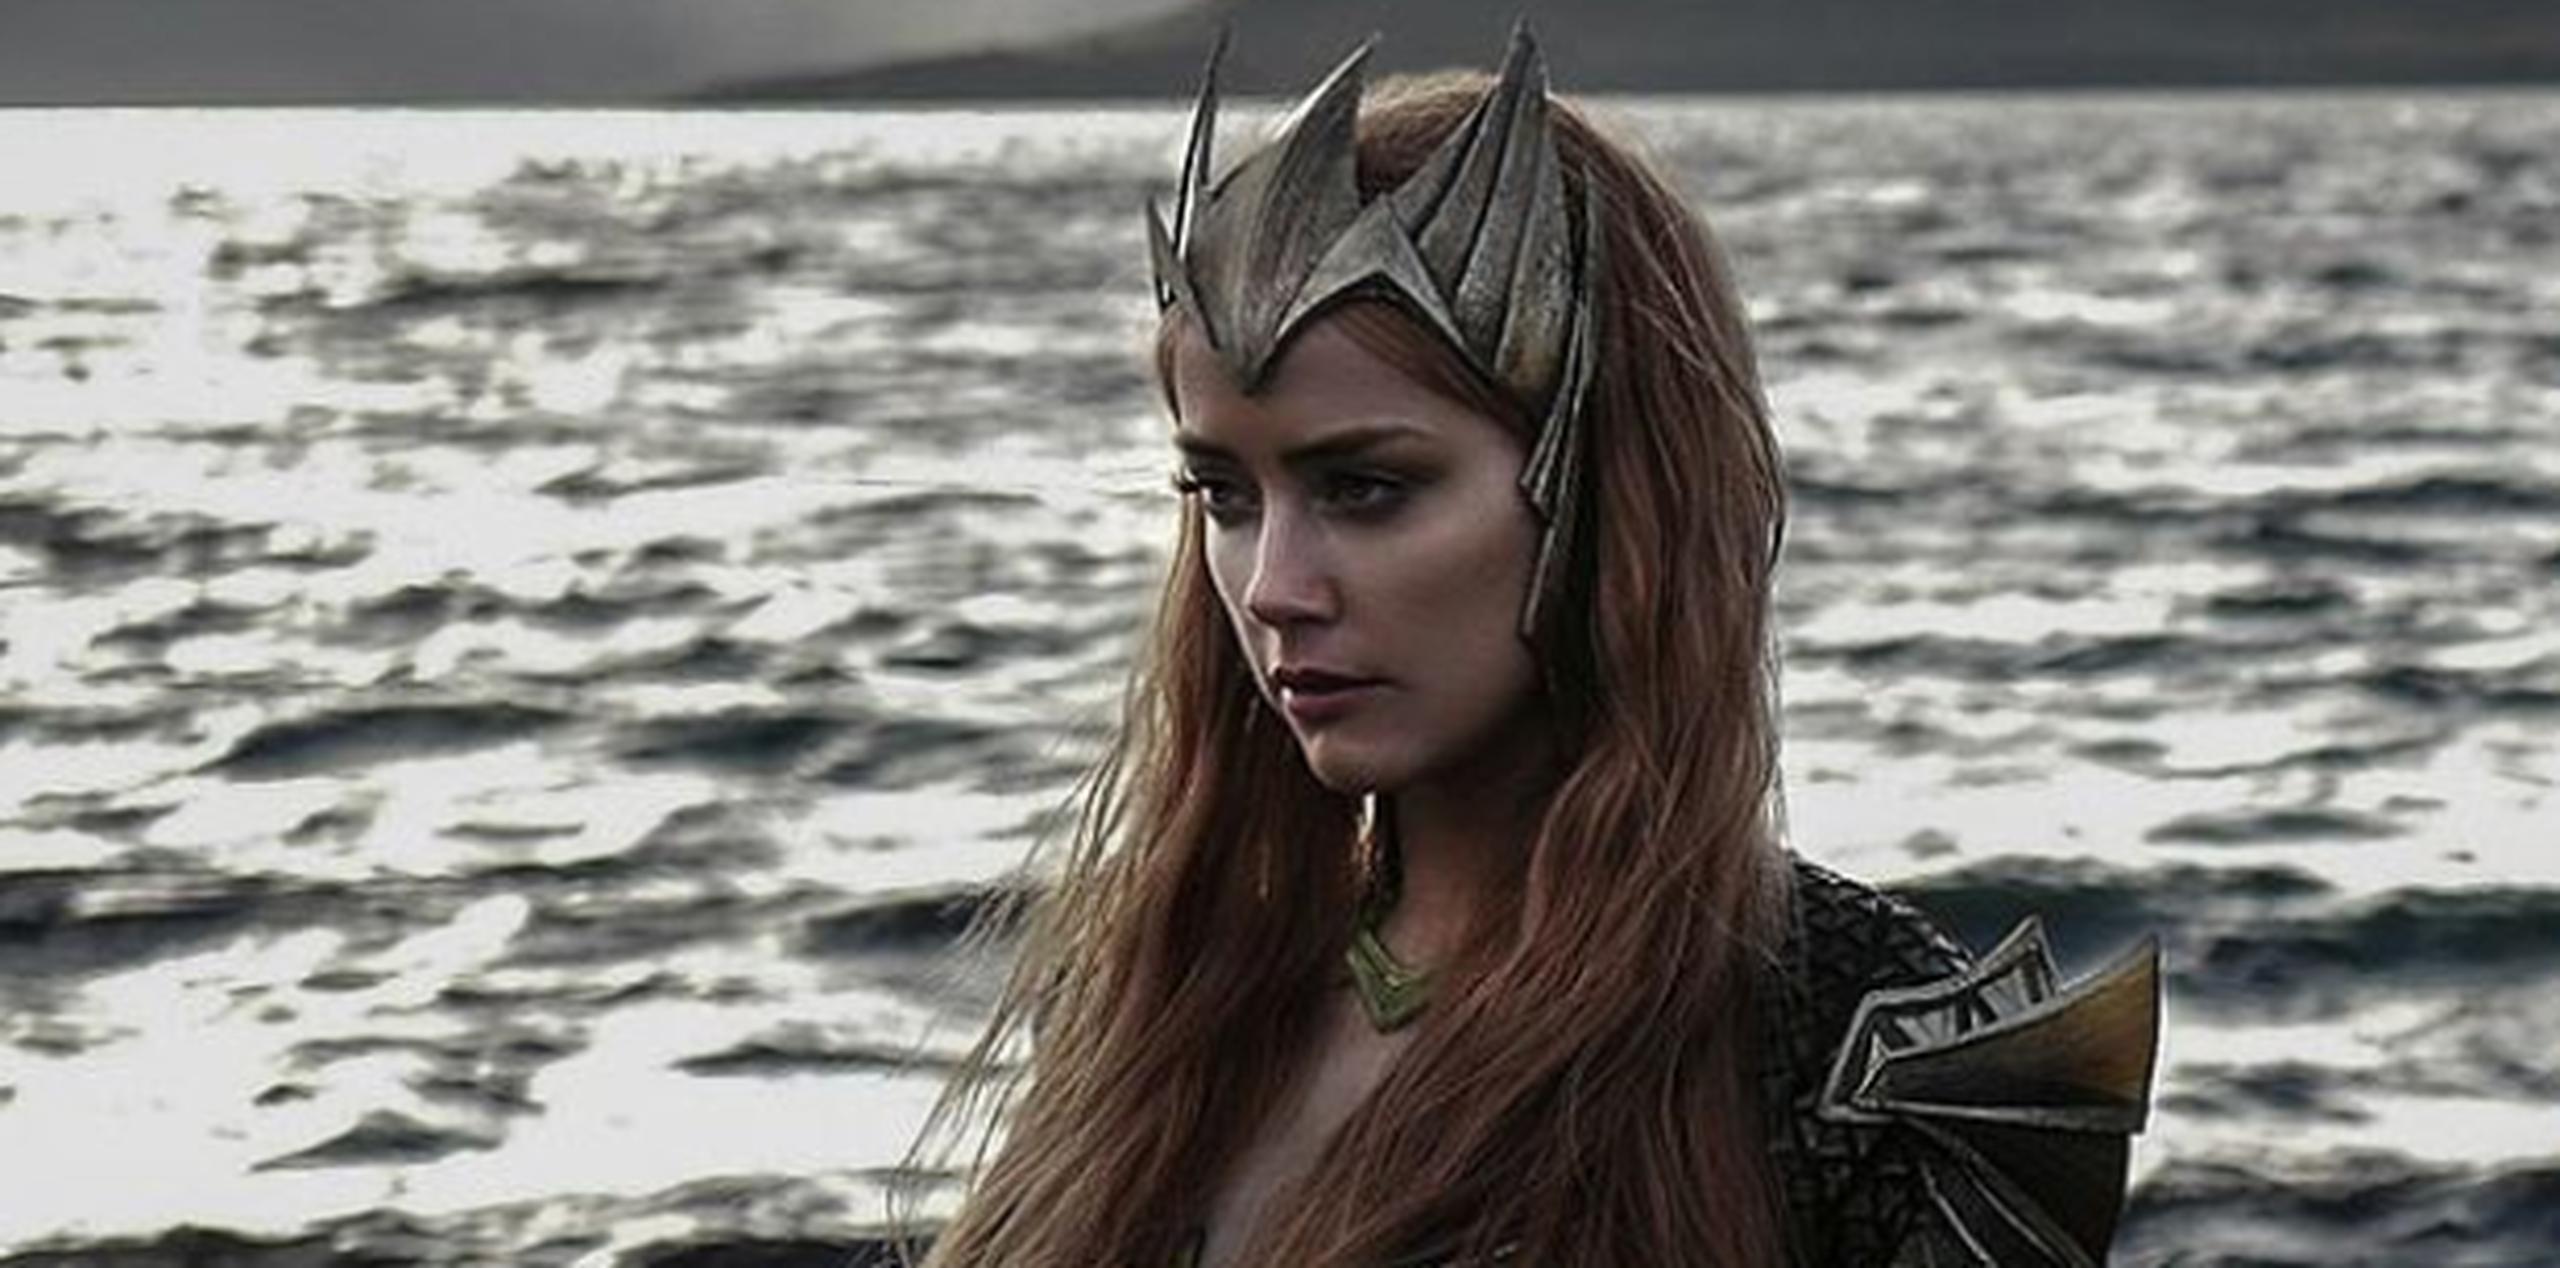 Amber Heard debutará en Justice League para luego tener un rol protagónico en la cinta de Aquaman. (Foto/ Warner Bros.)